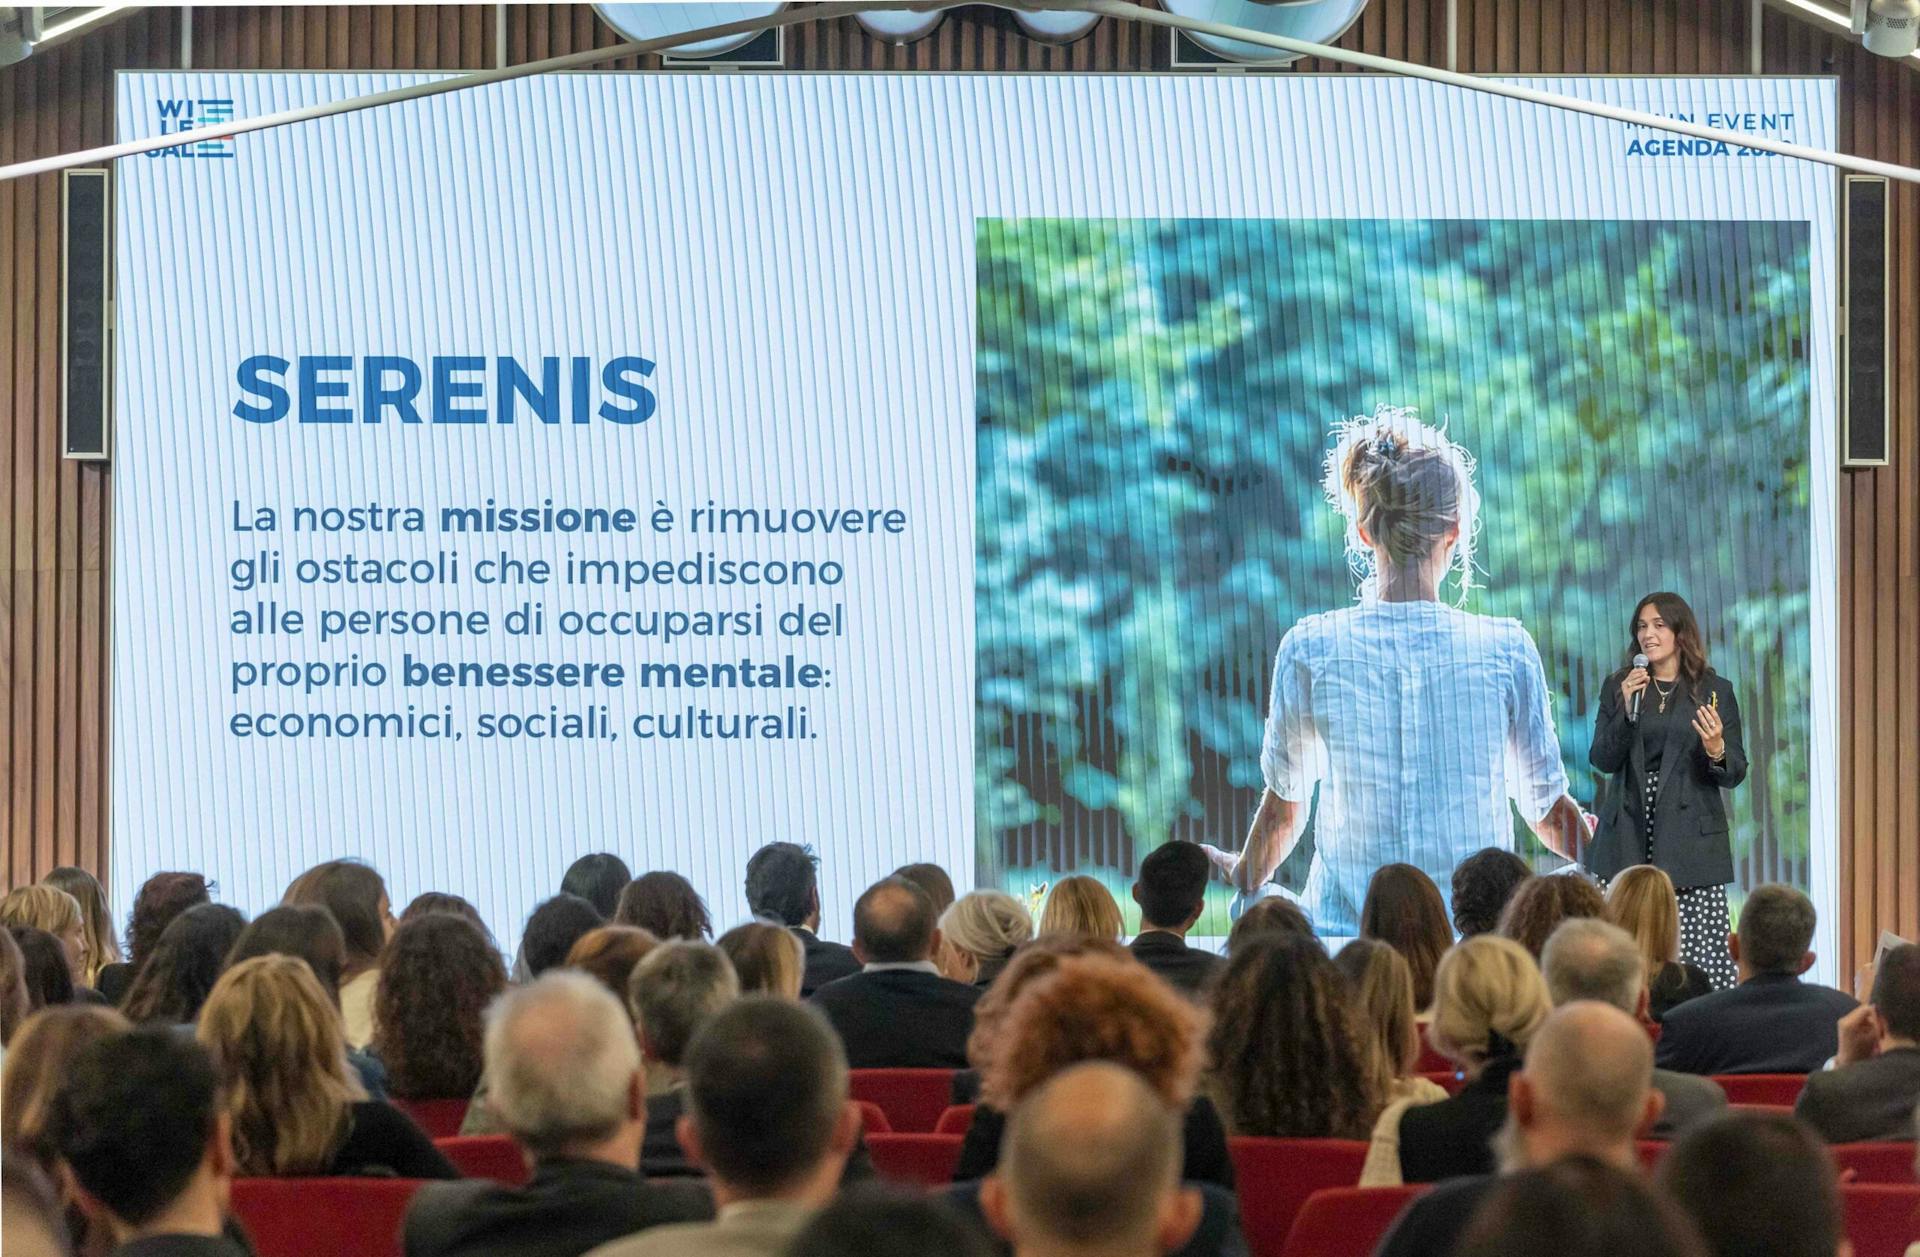 Valentina Castelli, Head of Brand and Partnership di Serenis, sul palco di Agenda 2030